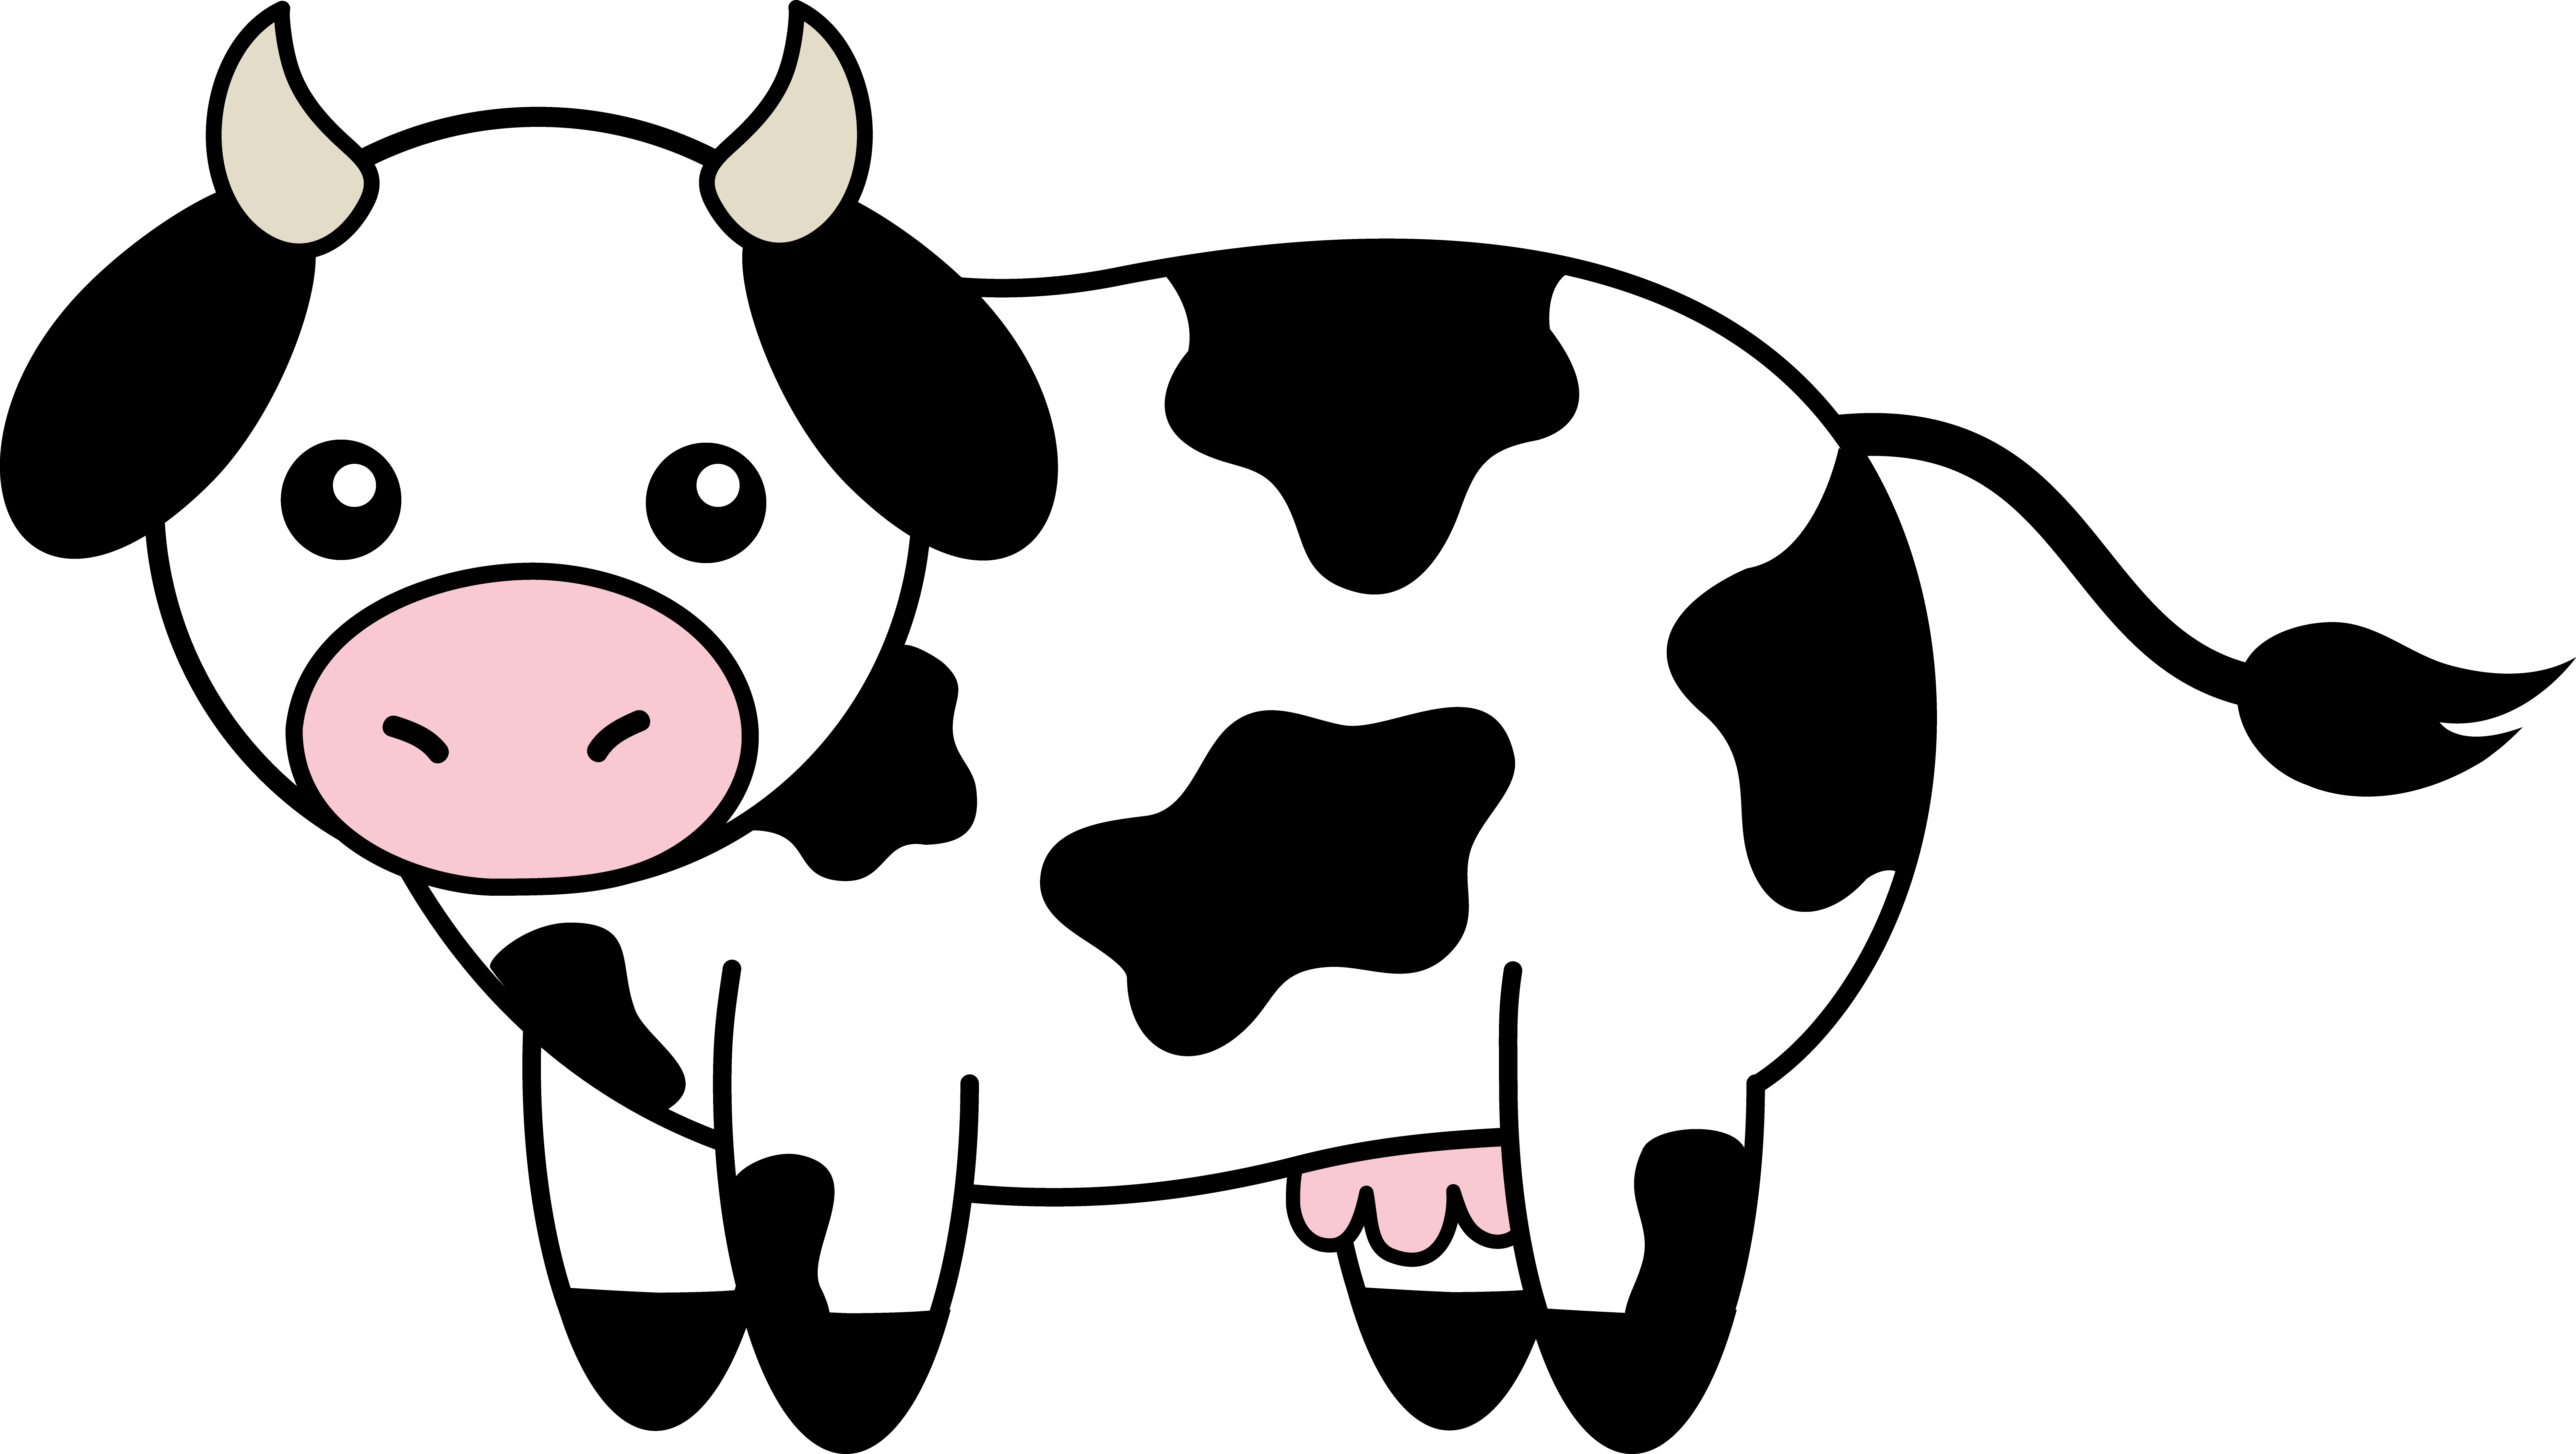 Cartoon cows clipart